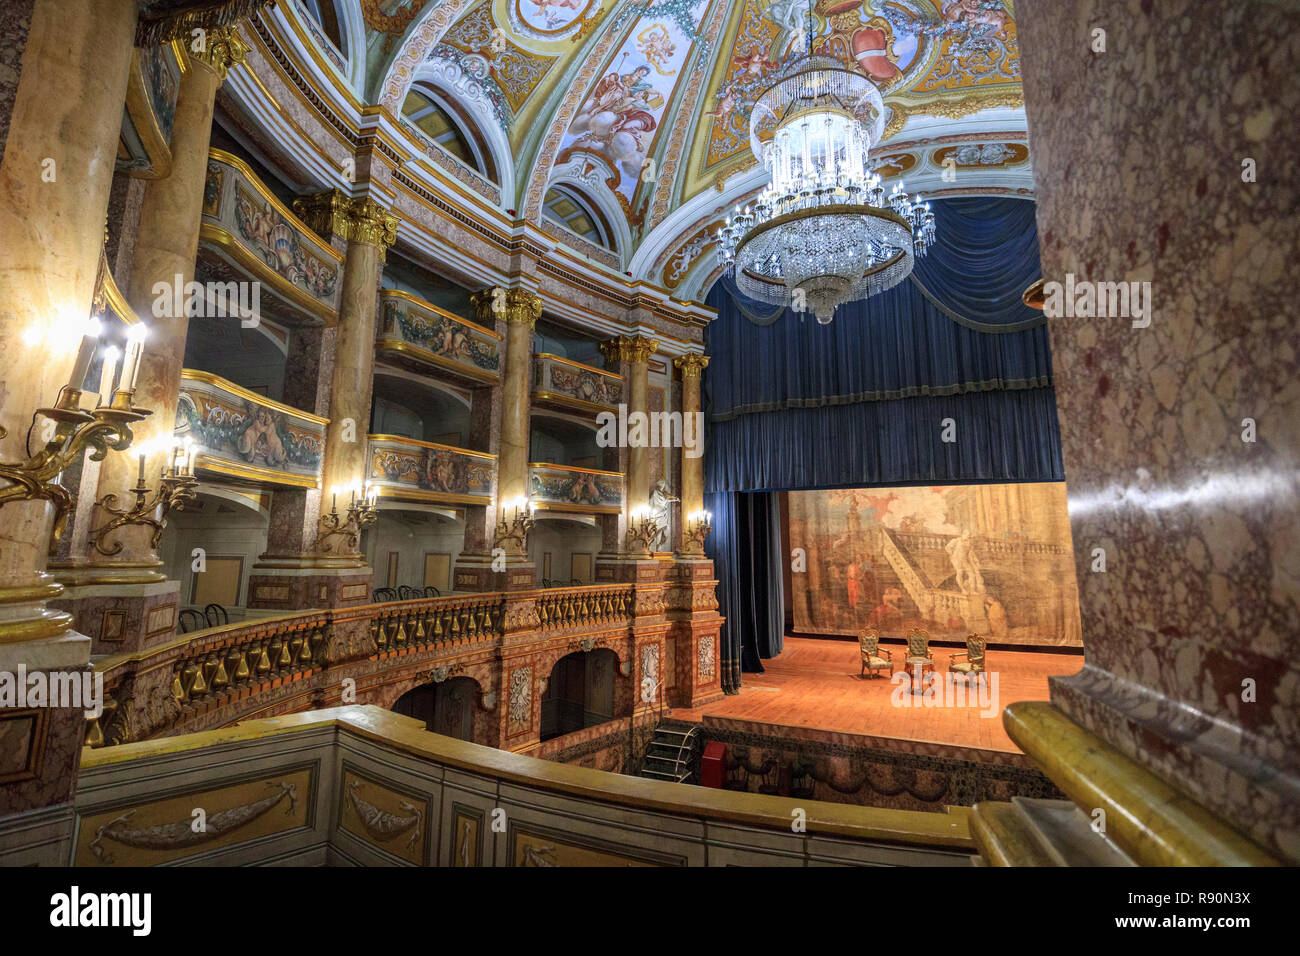 Exclusive Images of the Theatre In the Royal Palace of Caserta, Italy (Teatro  di Corte Opera di Vanvitelli 1769, Reggia di Caserta Stock Photo - Alamy